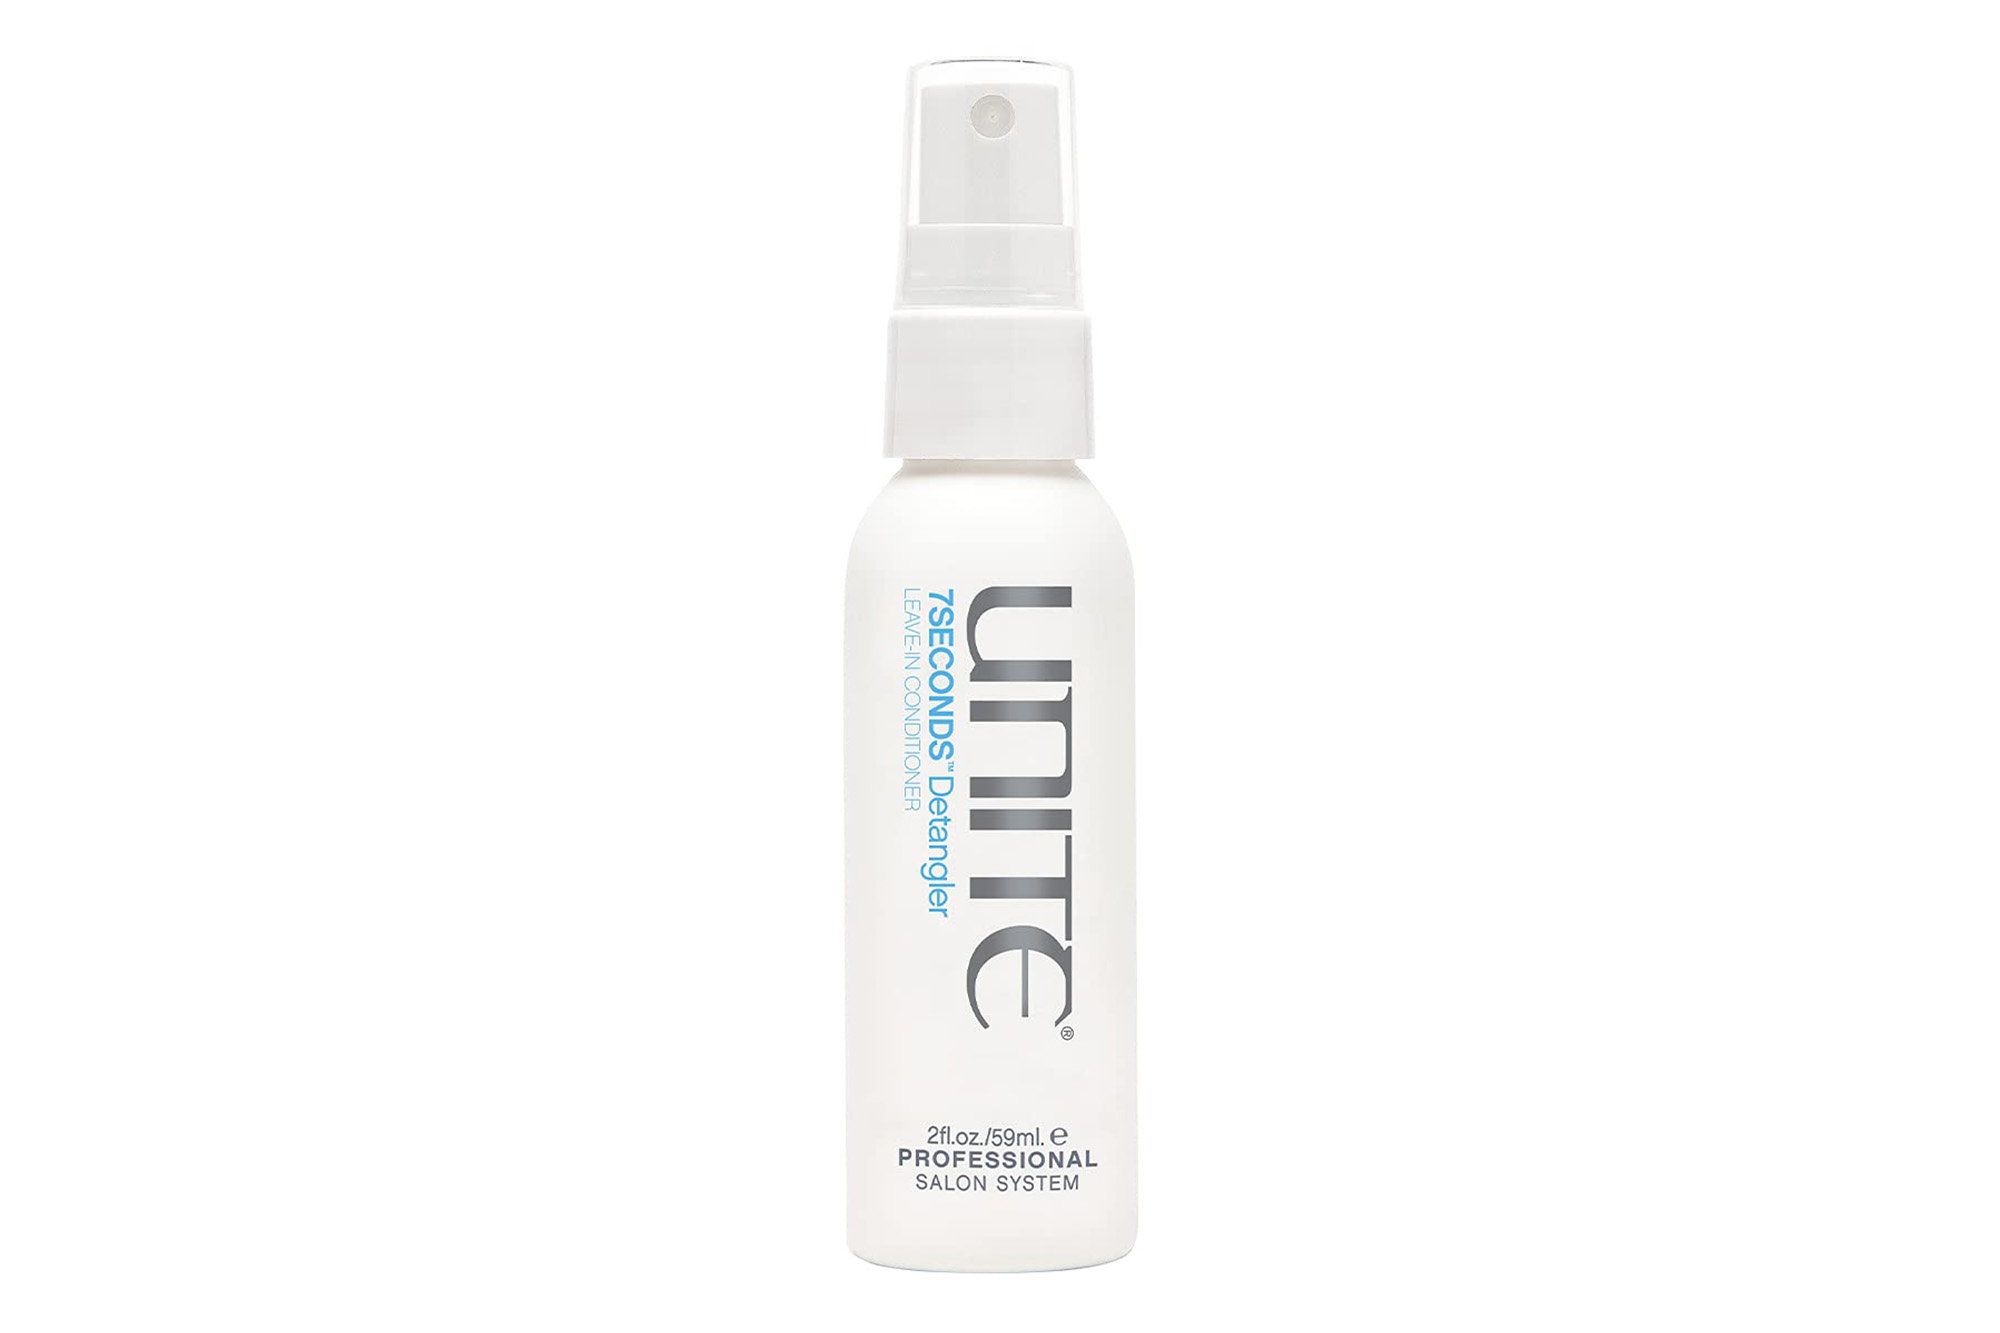 A white spray bottle of Unite hair detangler